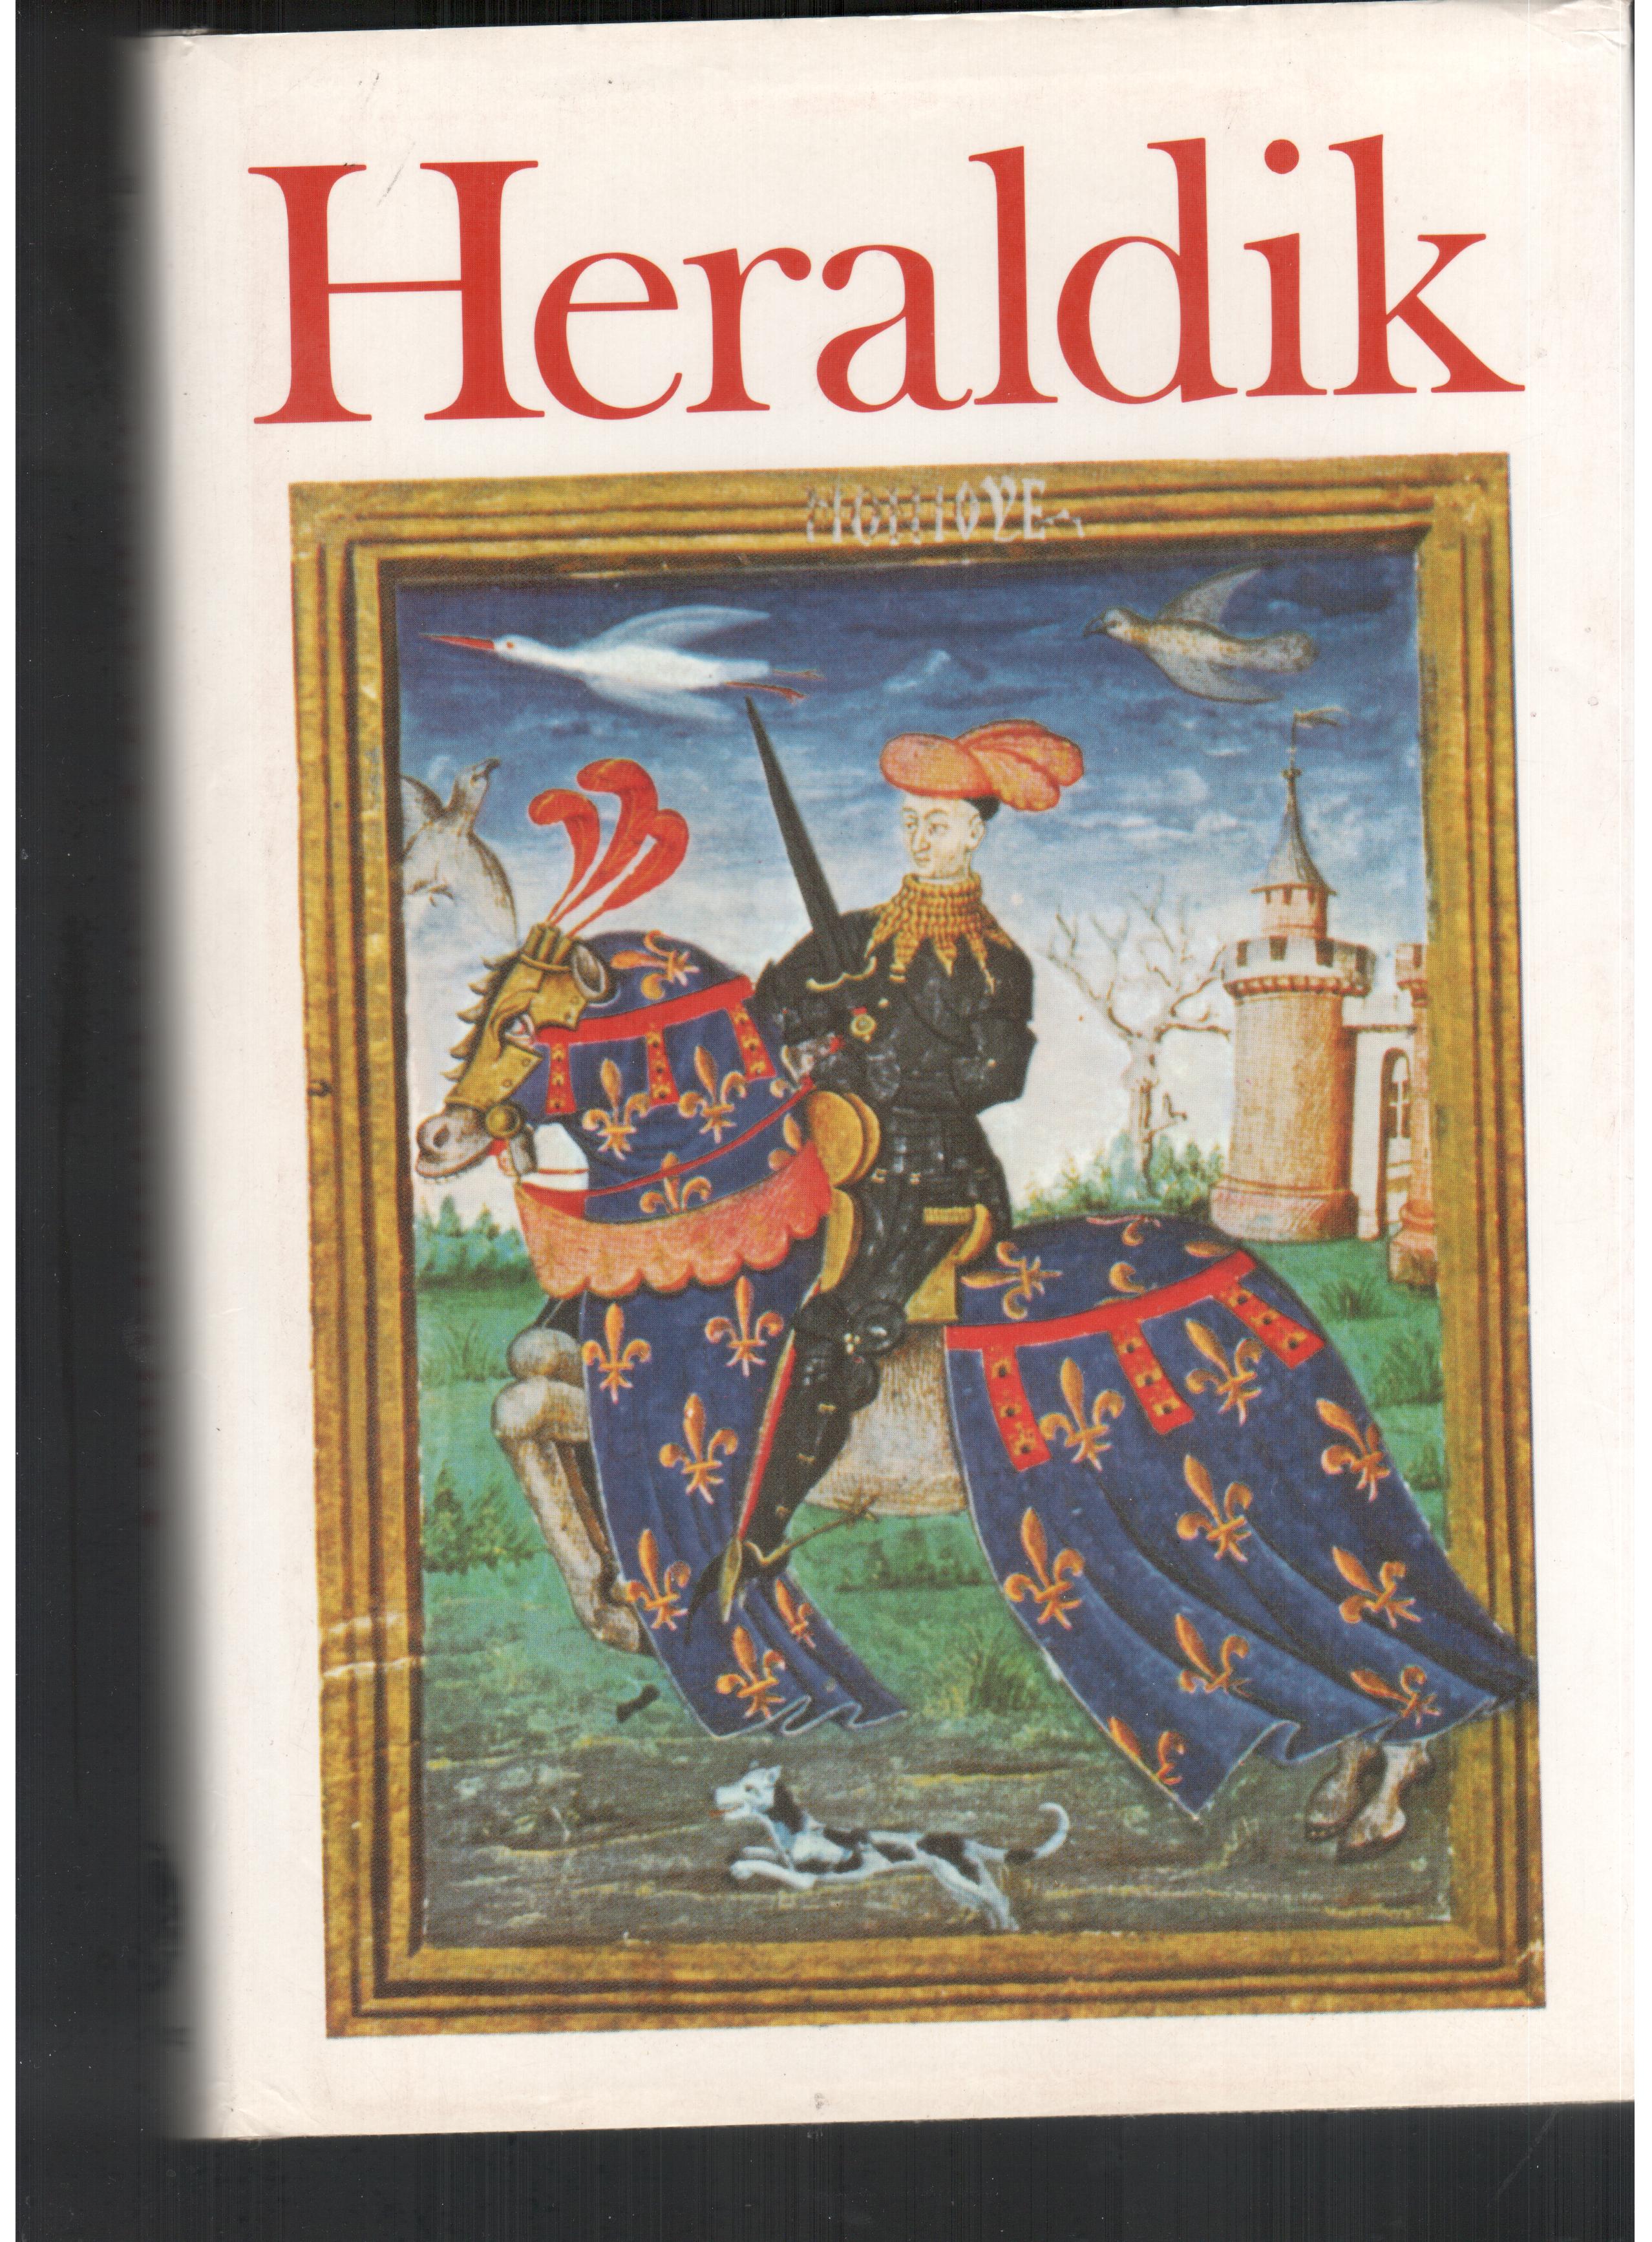 Donald L. Galbreath, Jequier Leon  Handbuch der Heraldik. 